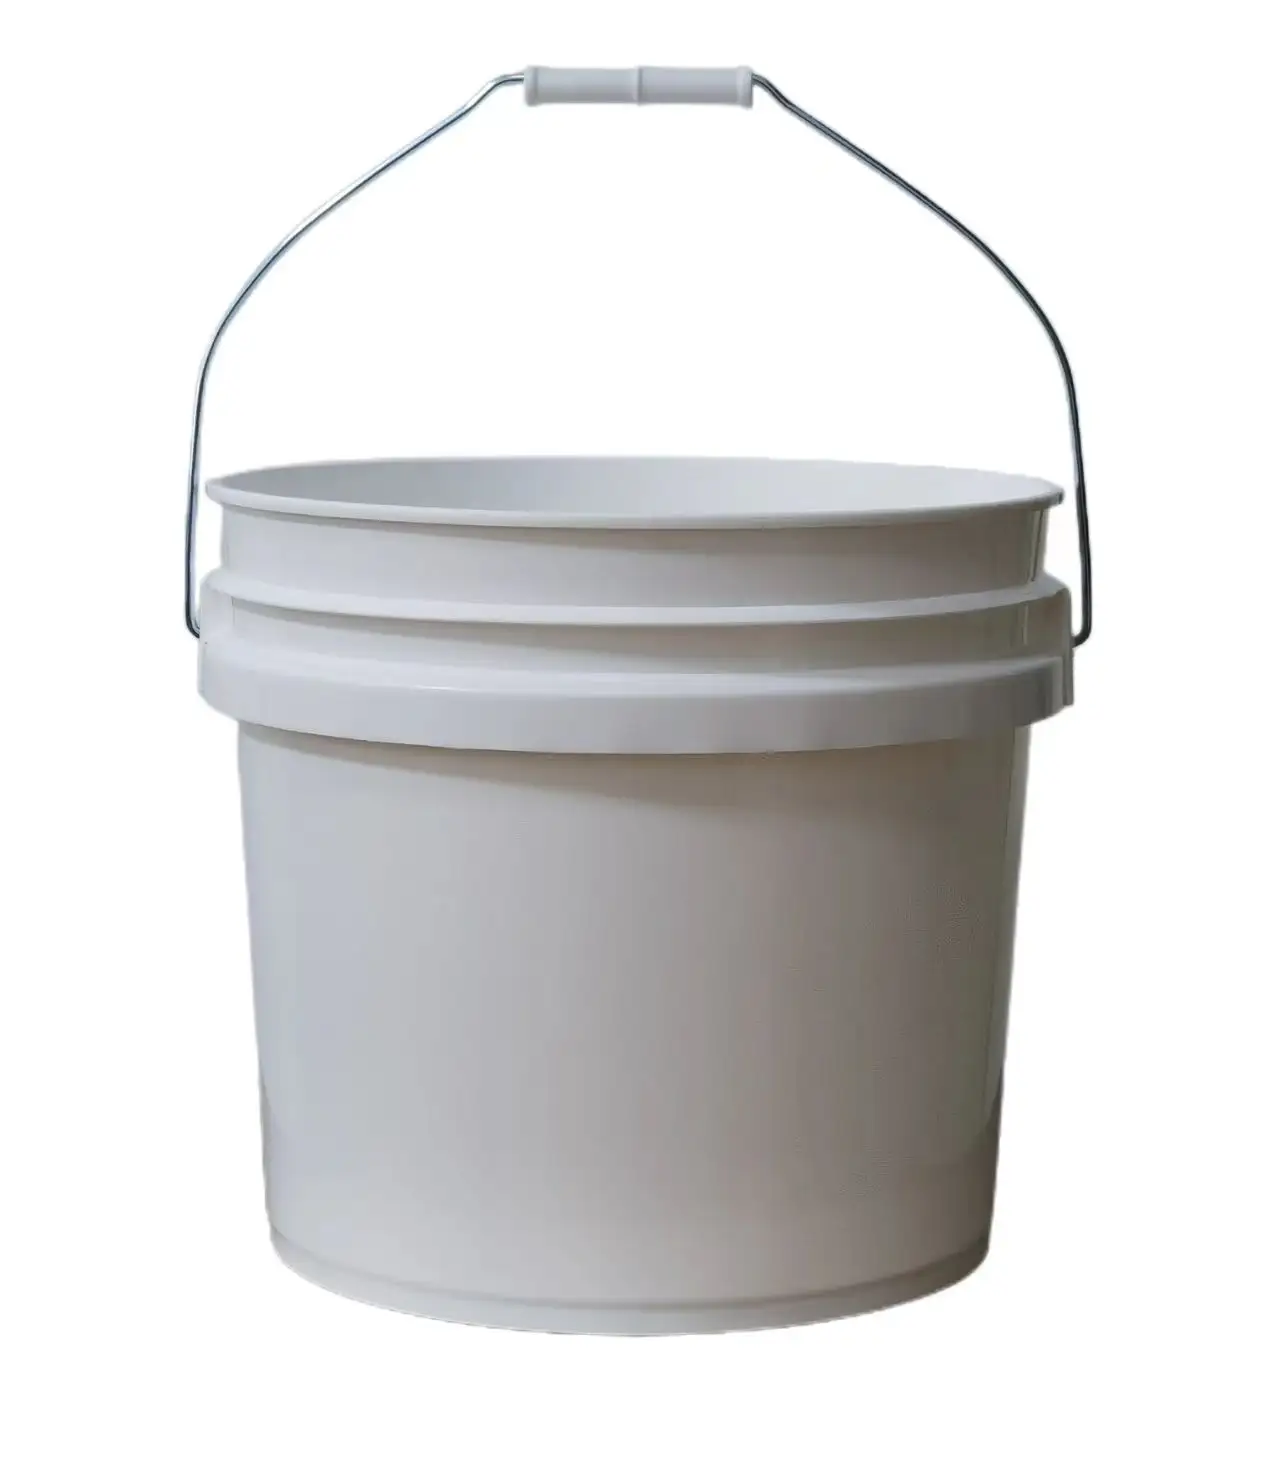 Kustom murah Kecil Besar 2L 5L 10L 20L 25L 5 galon makanan kelas aman cat putih ember plastik dengan tutup pegangan harga